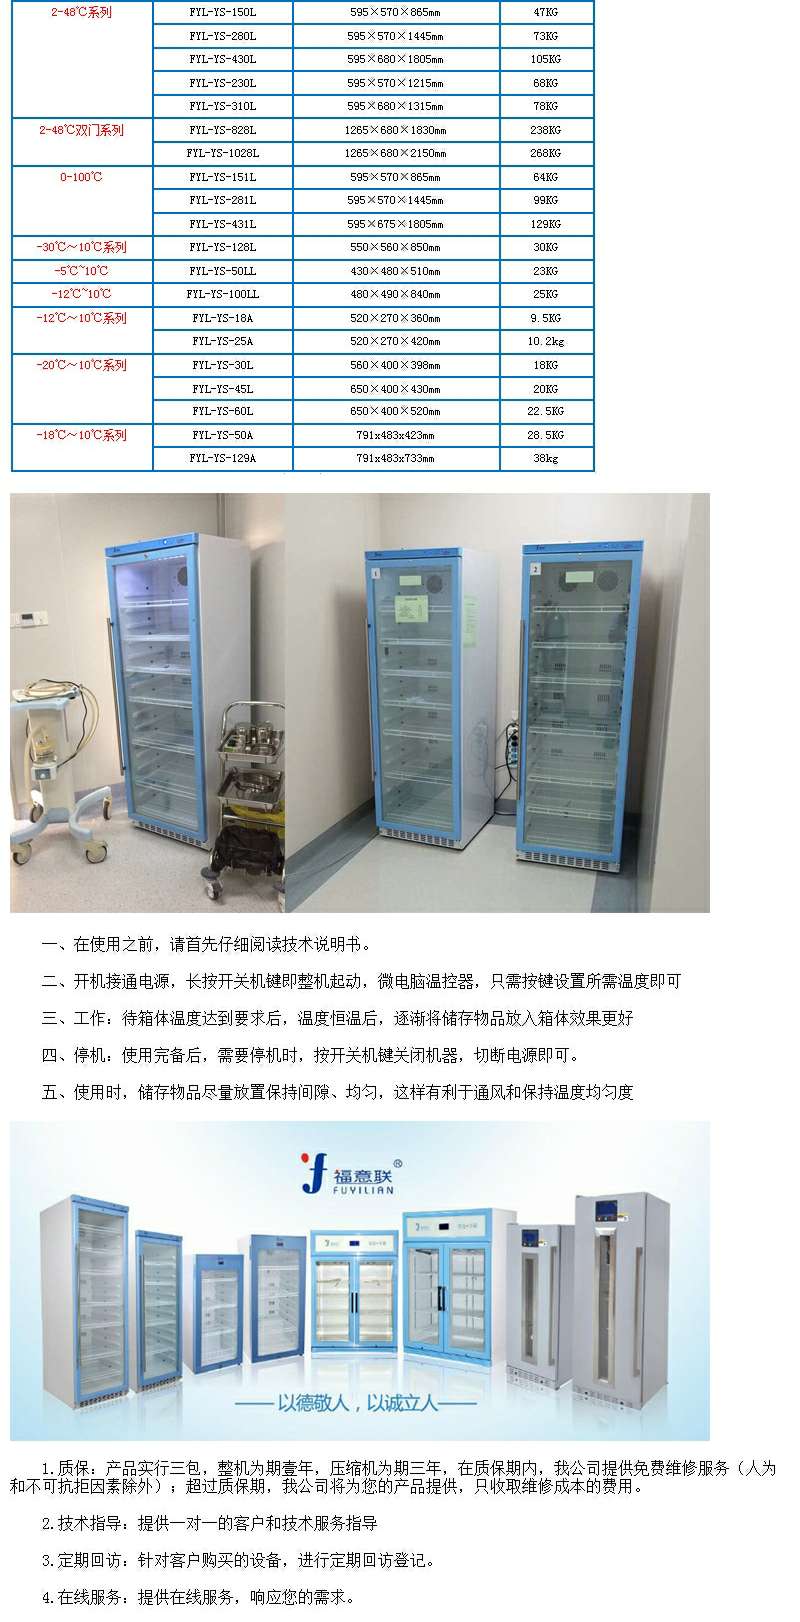 层析实验冷柜,温度:1-10℃,800L